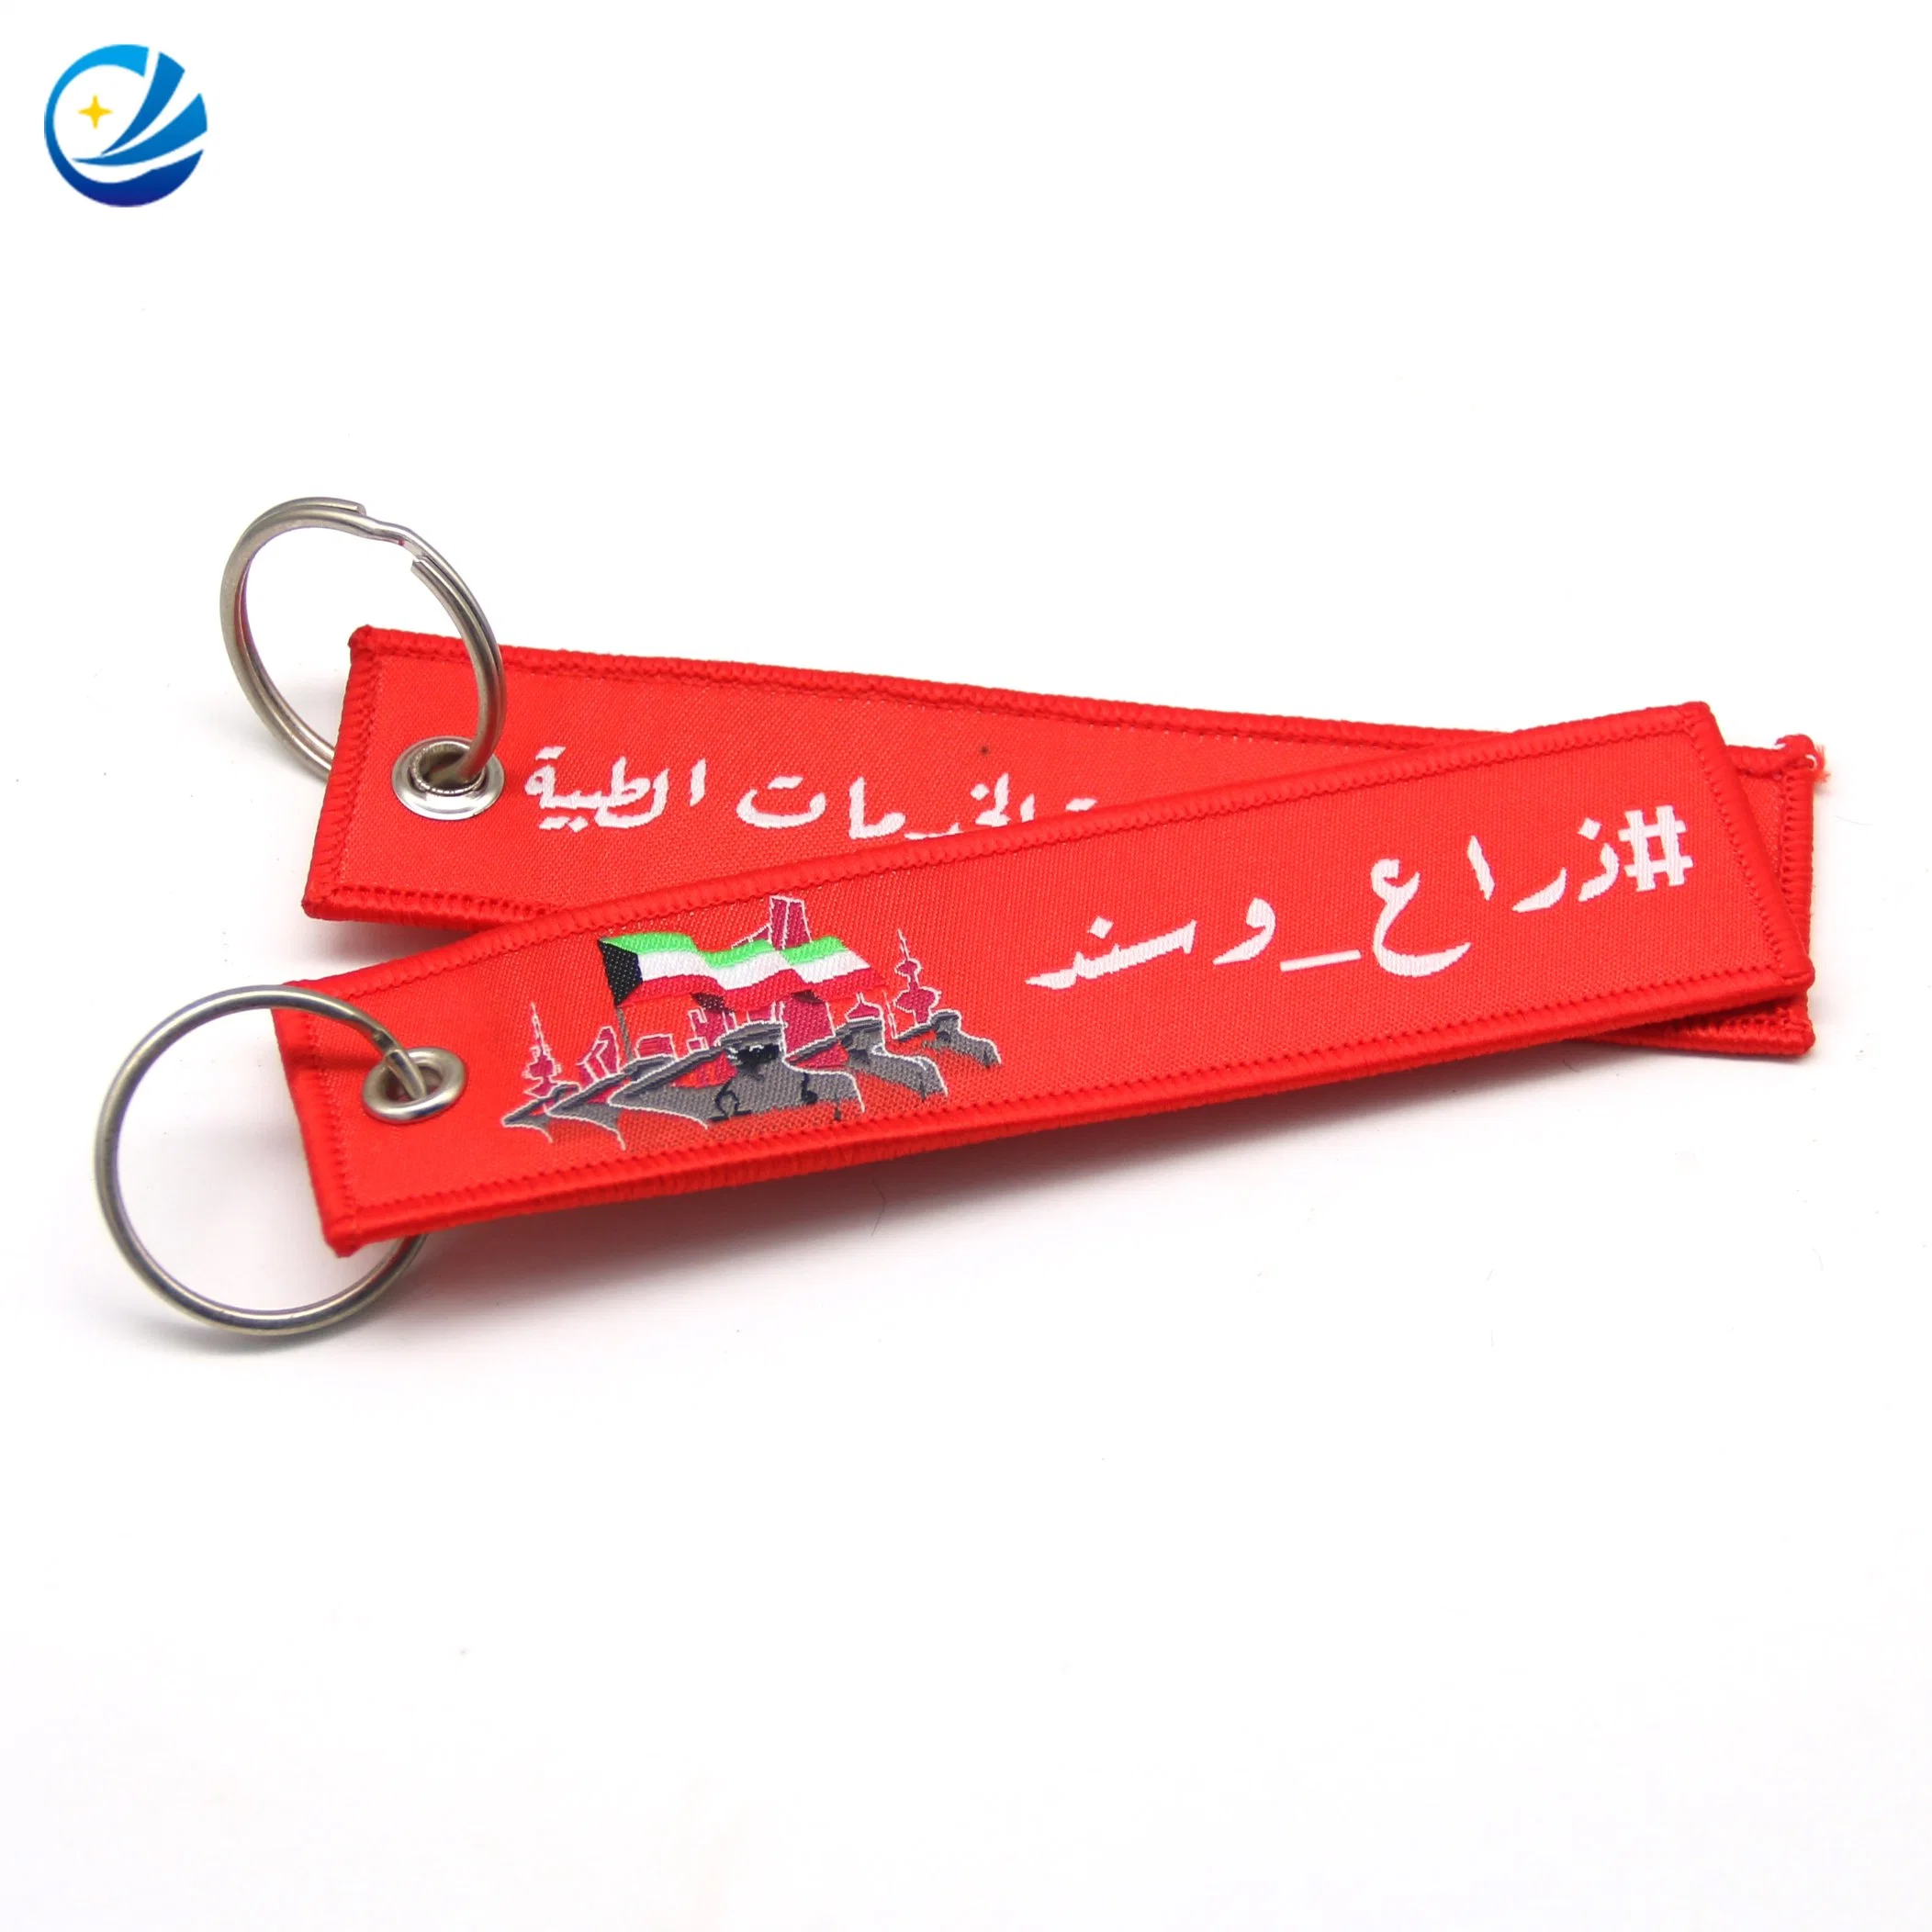 Popular Customized Fabric Keyring/Key Holder/Key Tag for Promotion Gift